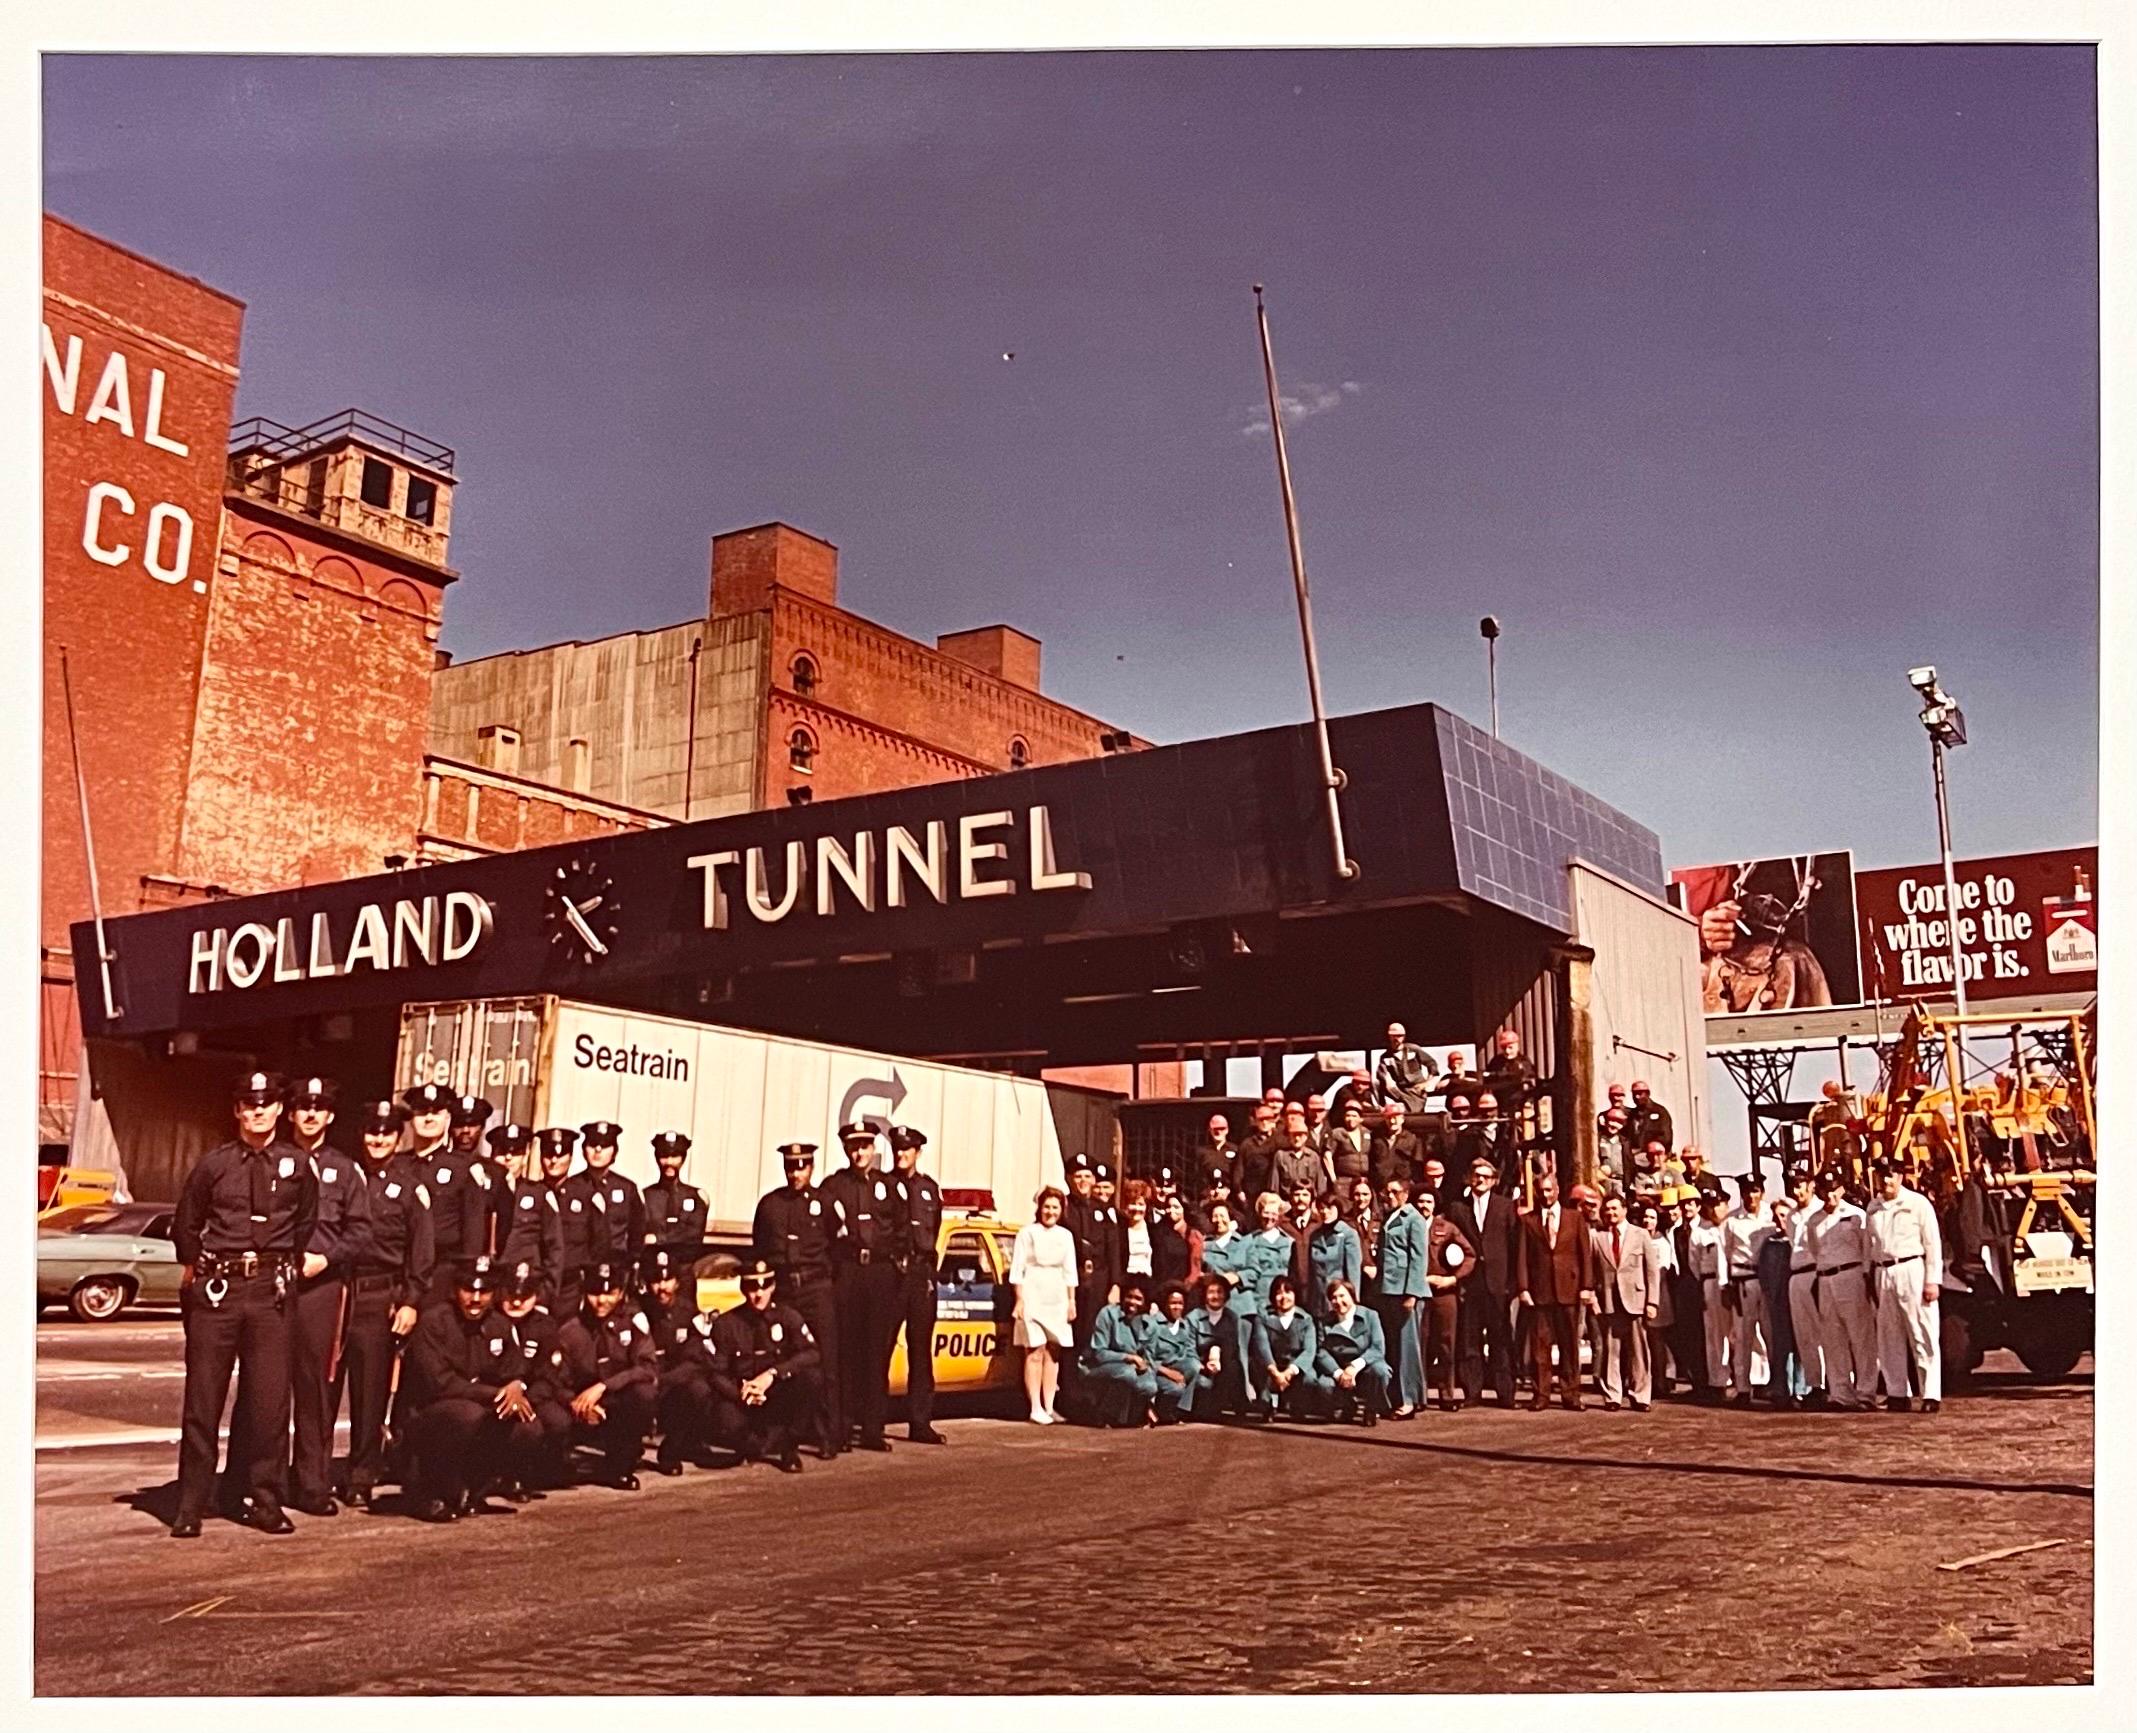 Neal Slavin (Amerikaner, geb. 1941)
Holland Tunnel Crew, New York, NY
Vintage C-print [Chromogener Entwicklungsabzug; Ektacolor-Abzüge]
Vom Fotografen handsigniert und nummeriert 48/75
Fotos mit einer 2,25 x 2,25 Hasselblad-Kamera und einer 4 x 5